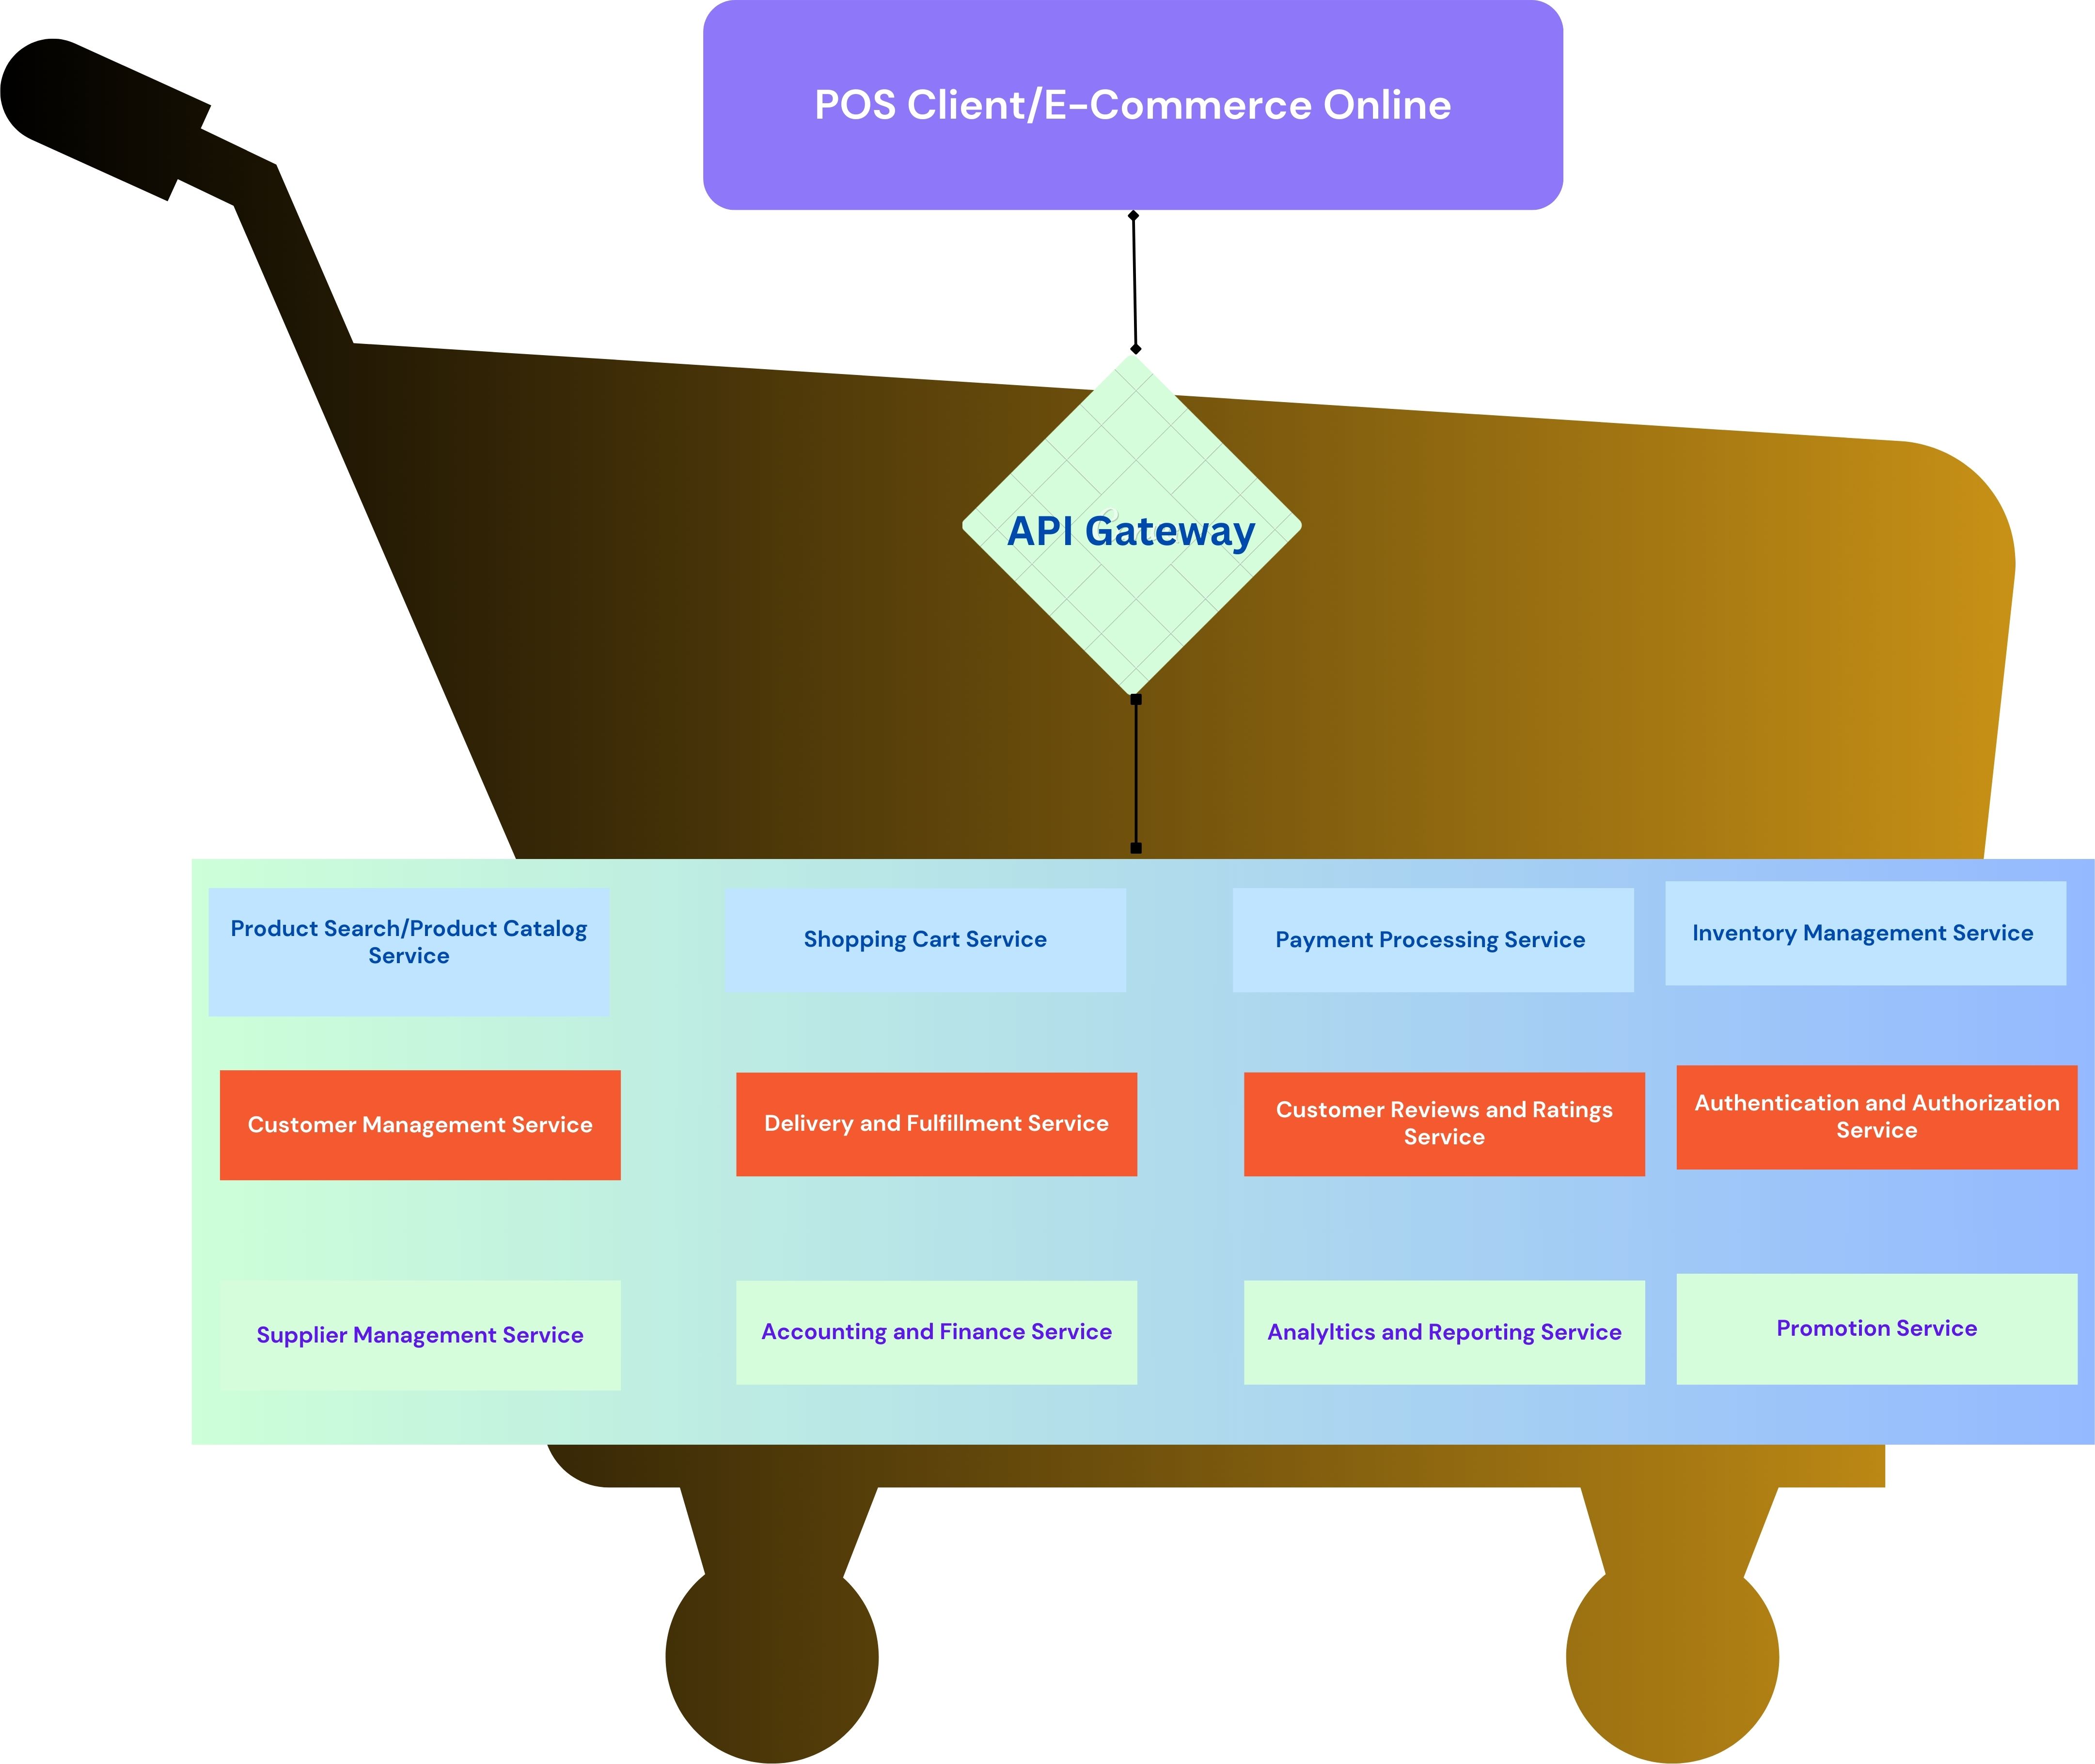 POS Client/E-commerce Online